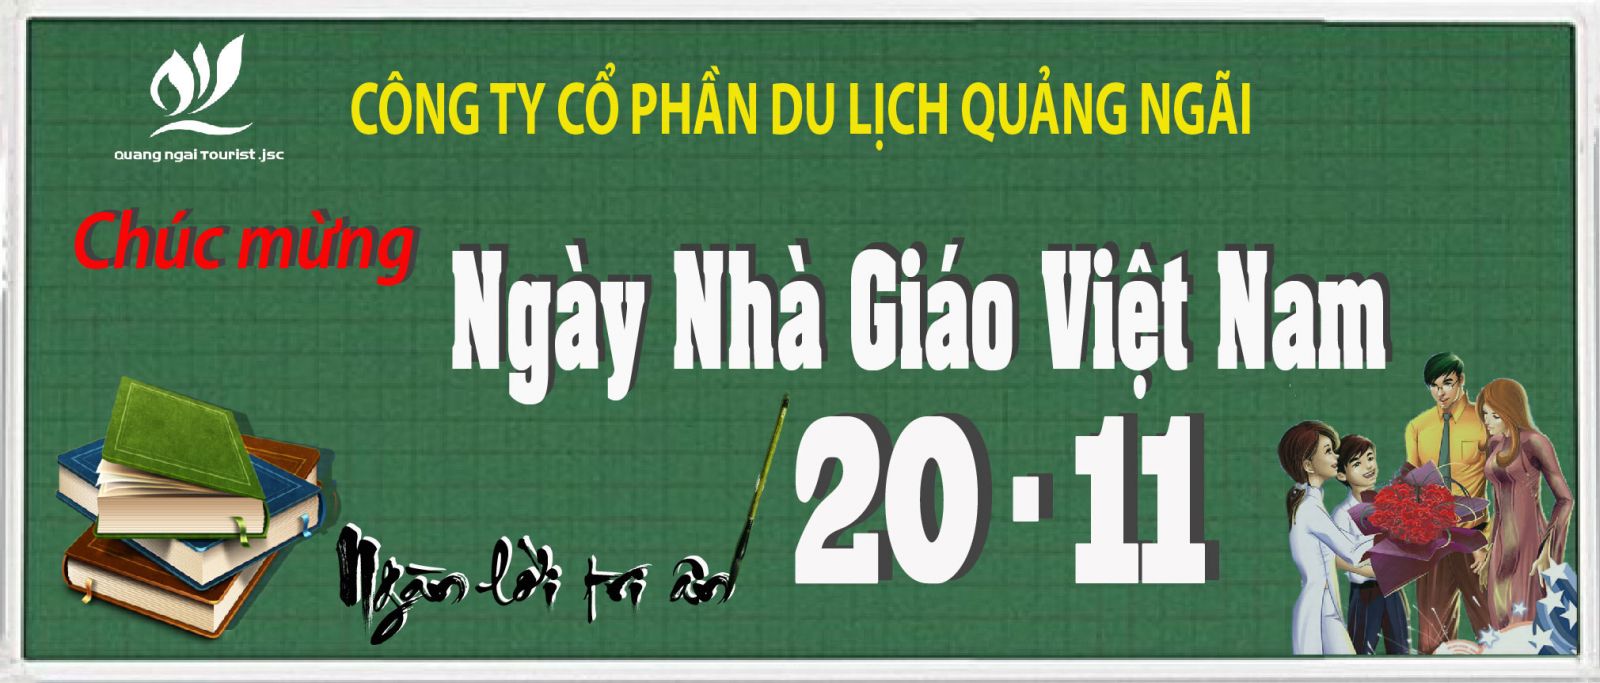 Tri ân ngày nhà giáo Việt Nam 20/11 - Quảng Ngai Tourist